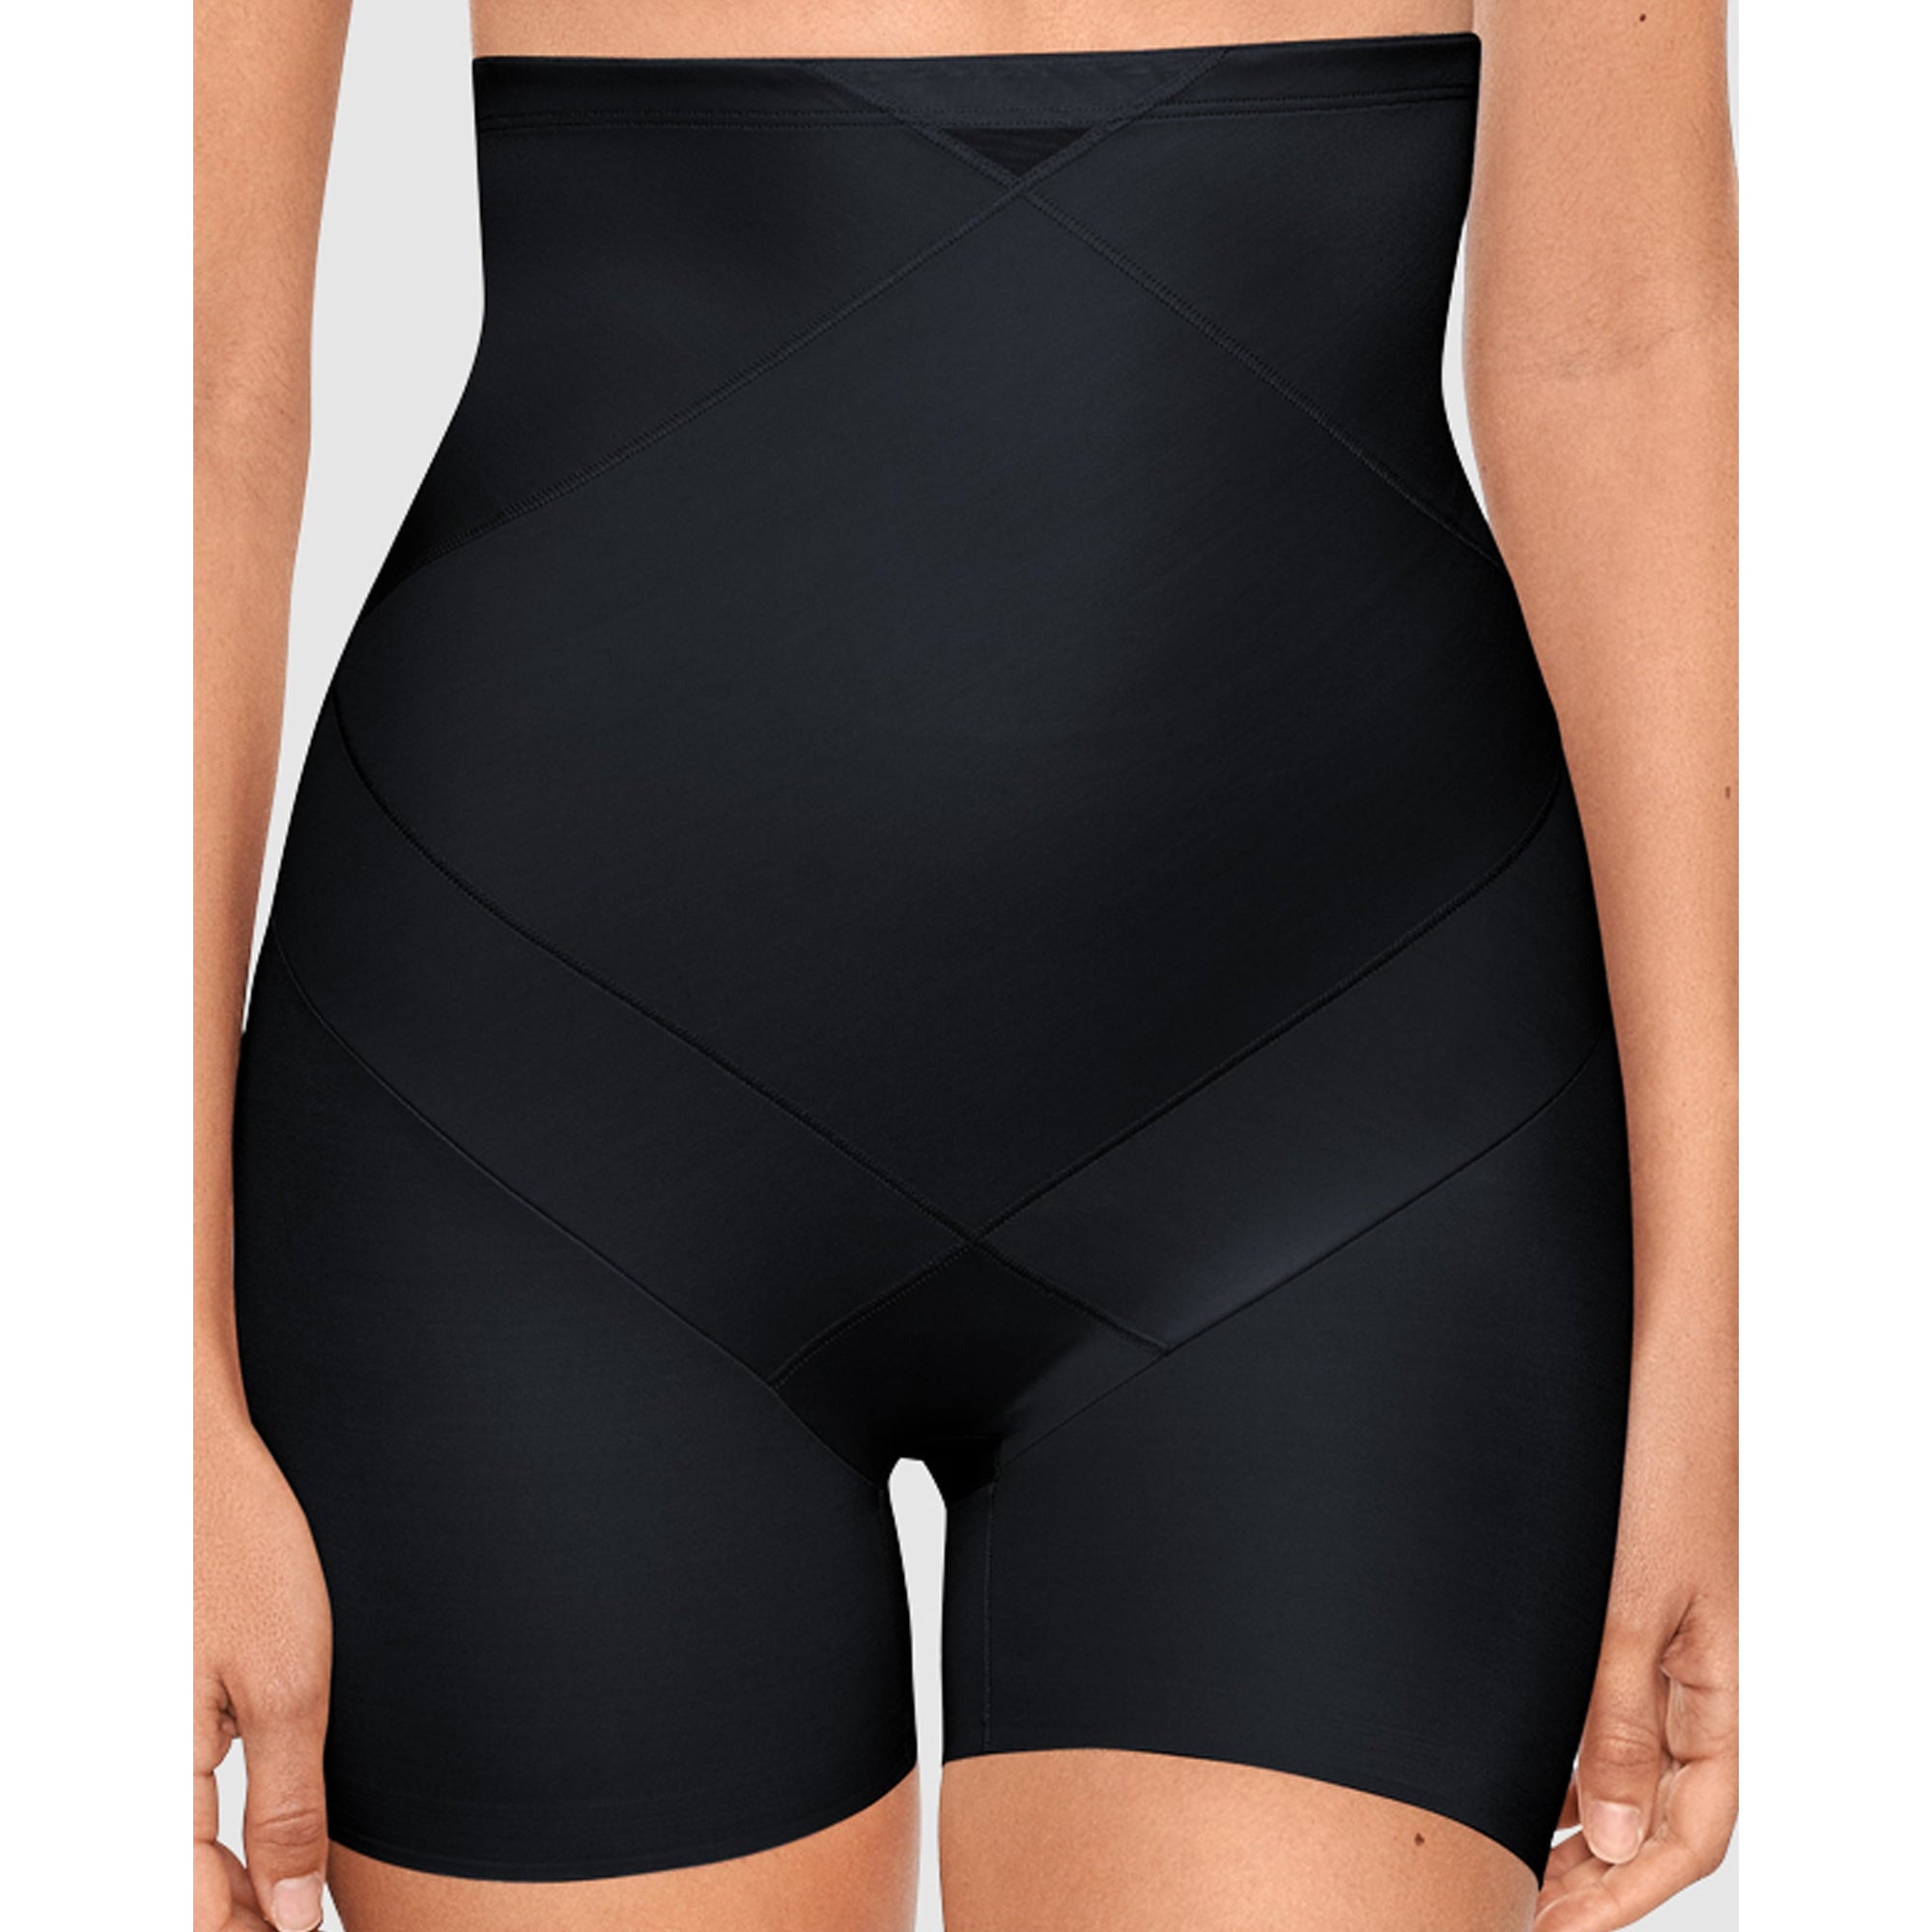 Flexees firm control waist shaker shorts XL